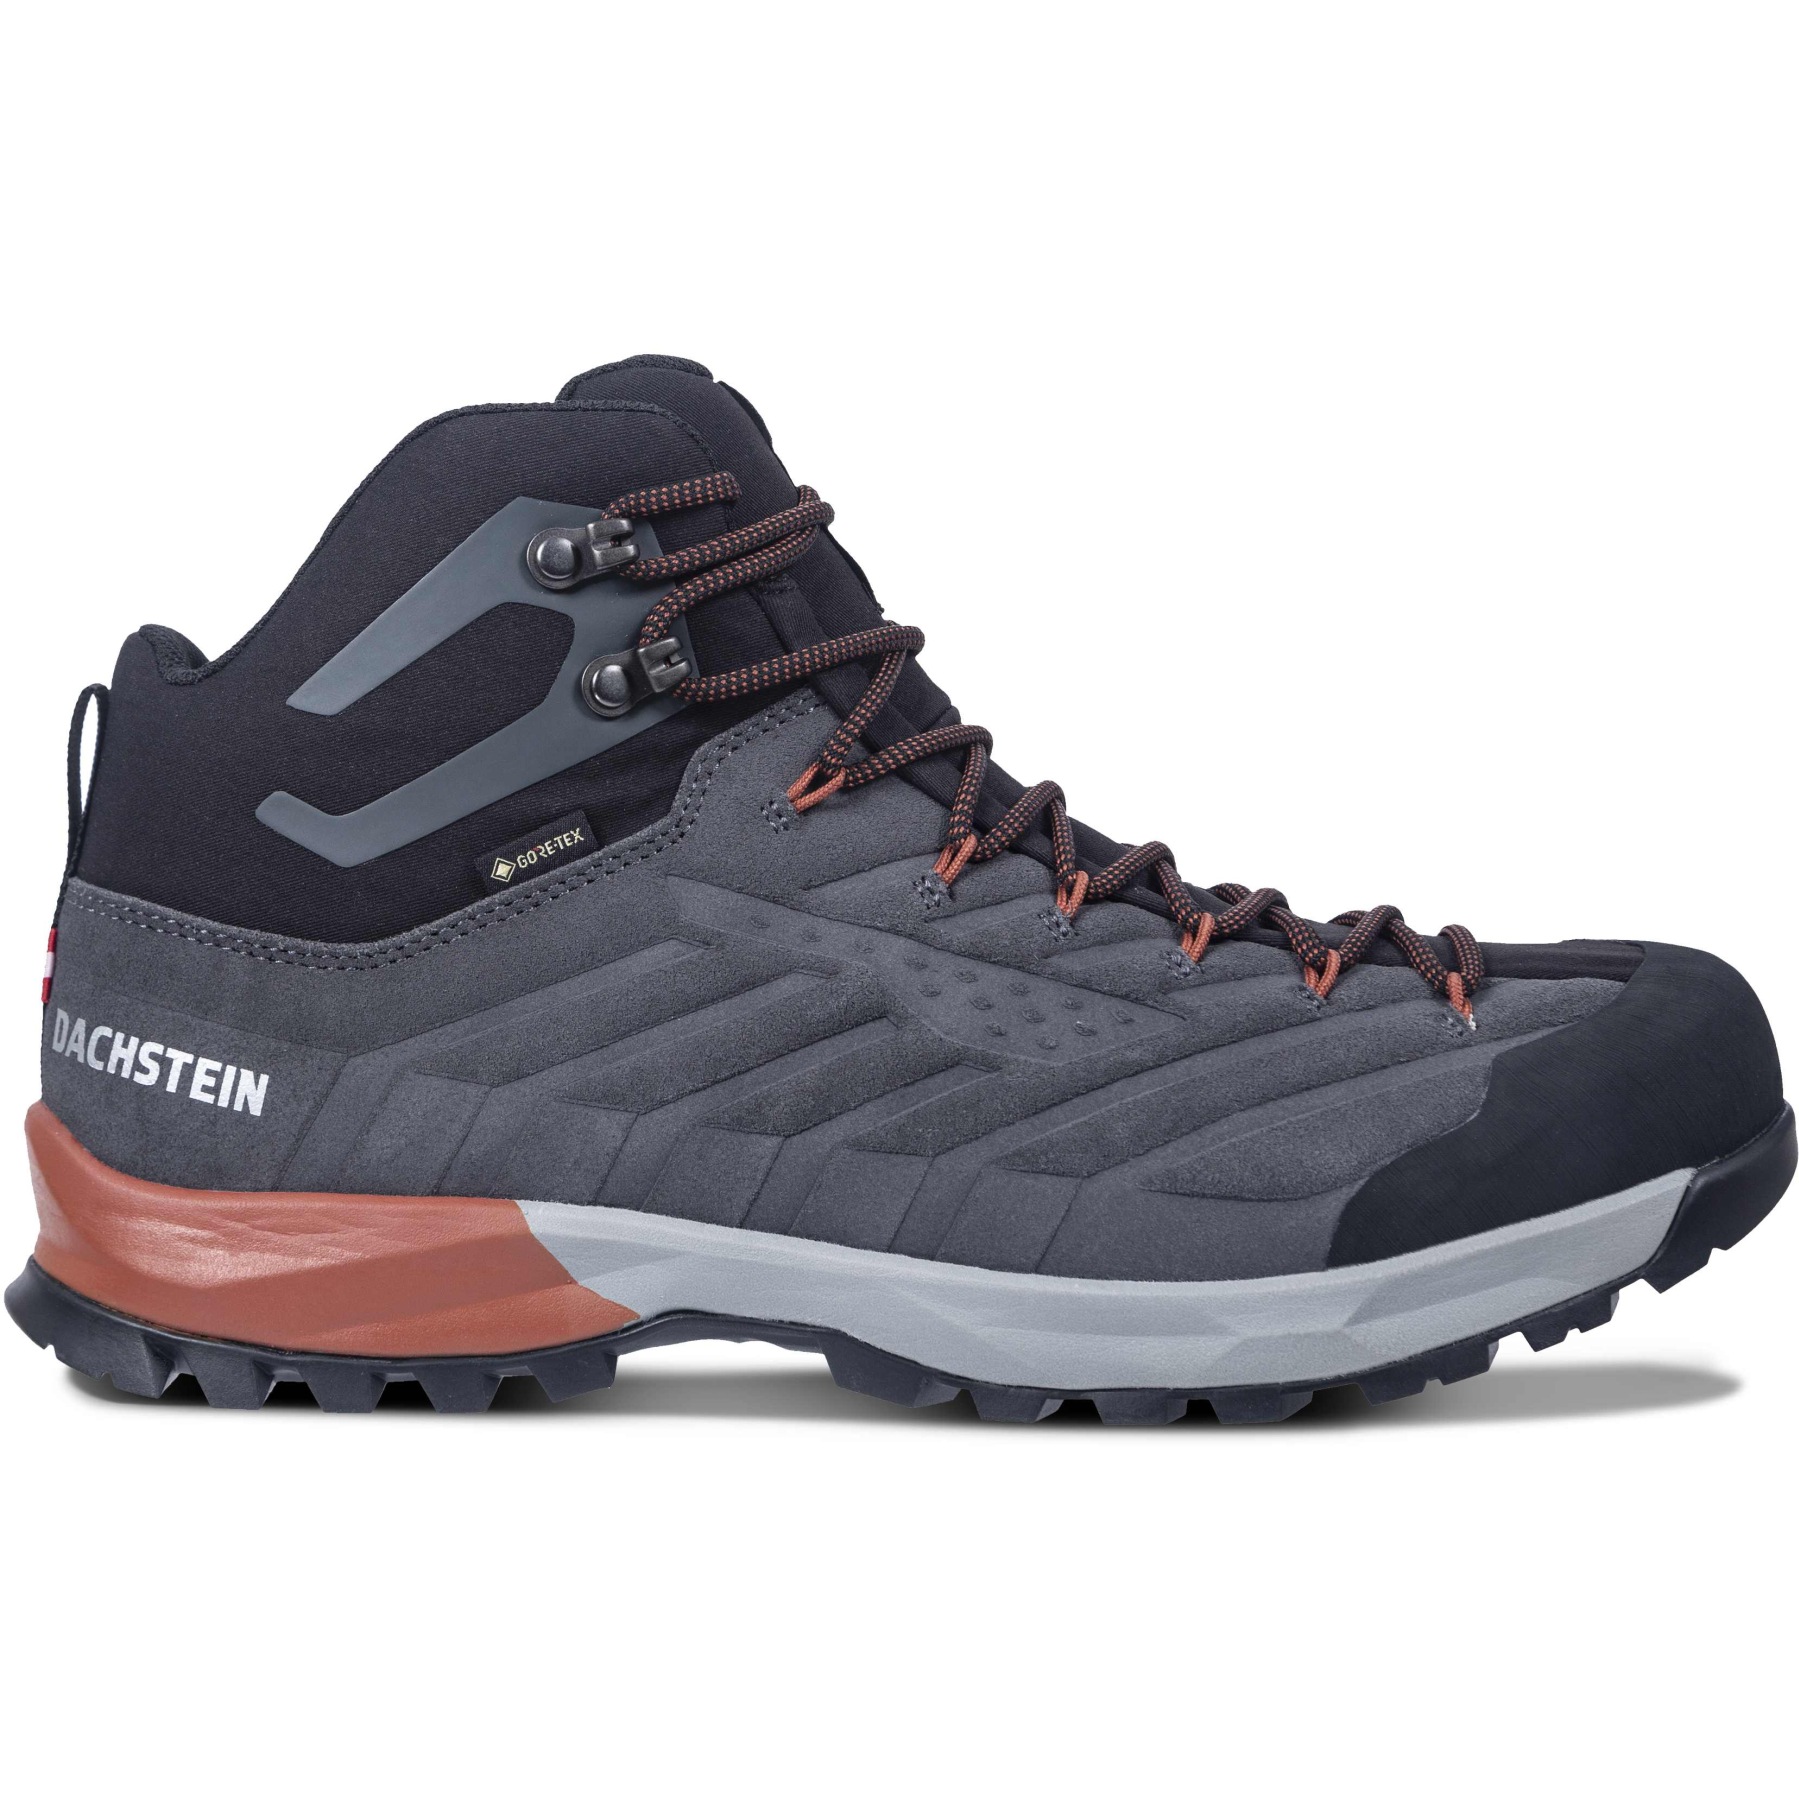 Produktbild von Dachstein SF-21 MC GTX Herren Outdoor-Schuhe - granite